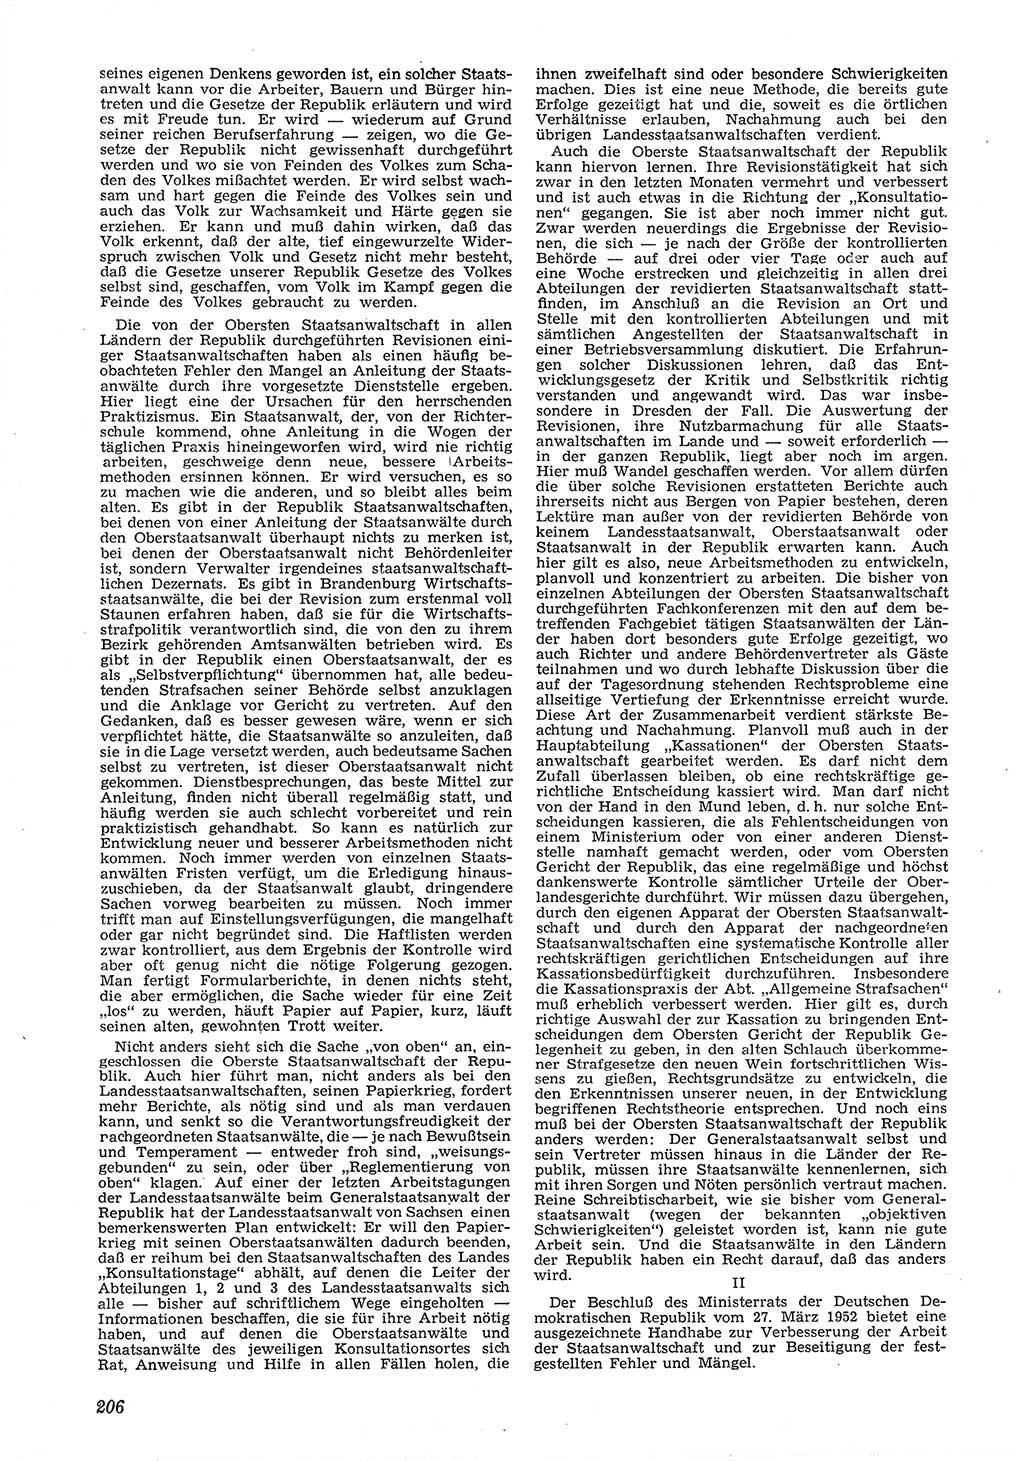 Neue Justiz (NJ), Zeitschrift für Recht und Rechtswissenschaft [Deutsche Demokratische Republik (DDR)], 6. Jahrgang 1952, Seite 206 (NJ DDR 1952, S. 206)